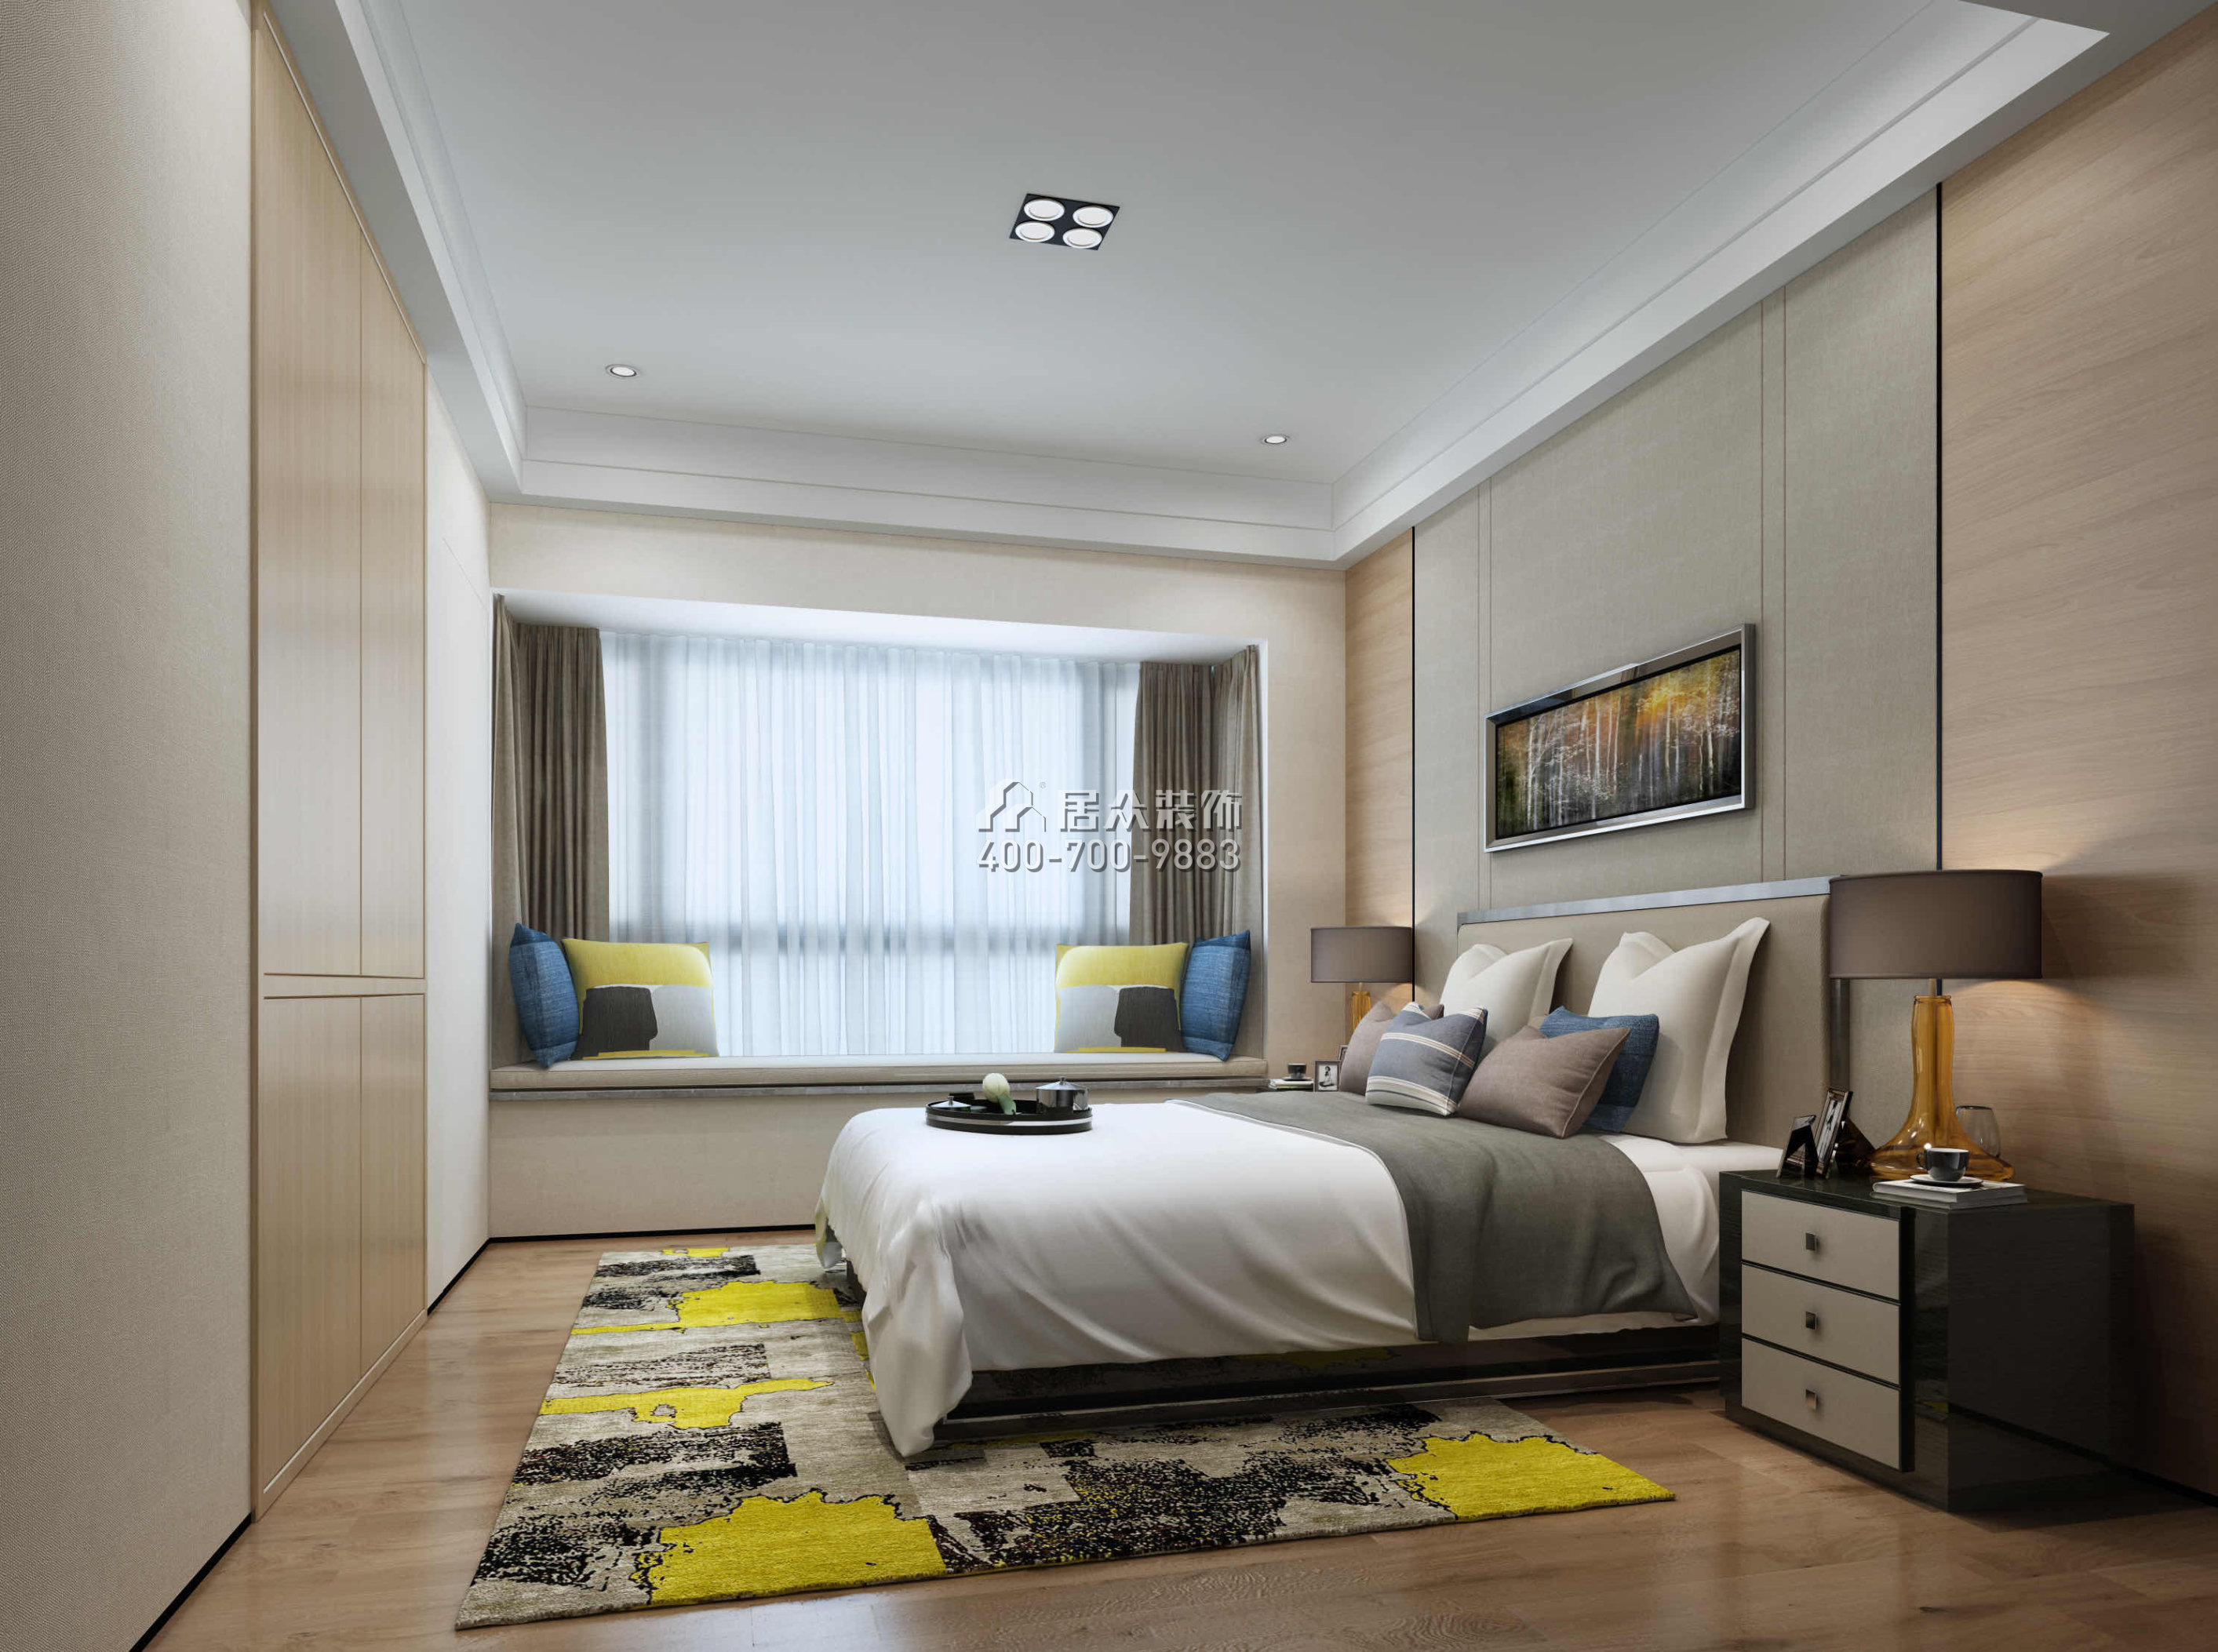 華發峰景灣190平方米現代簡約風格平層戶型臥室裝修效果圖